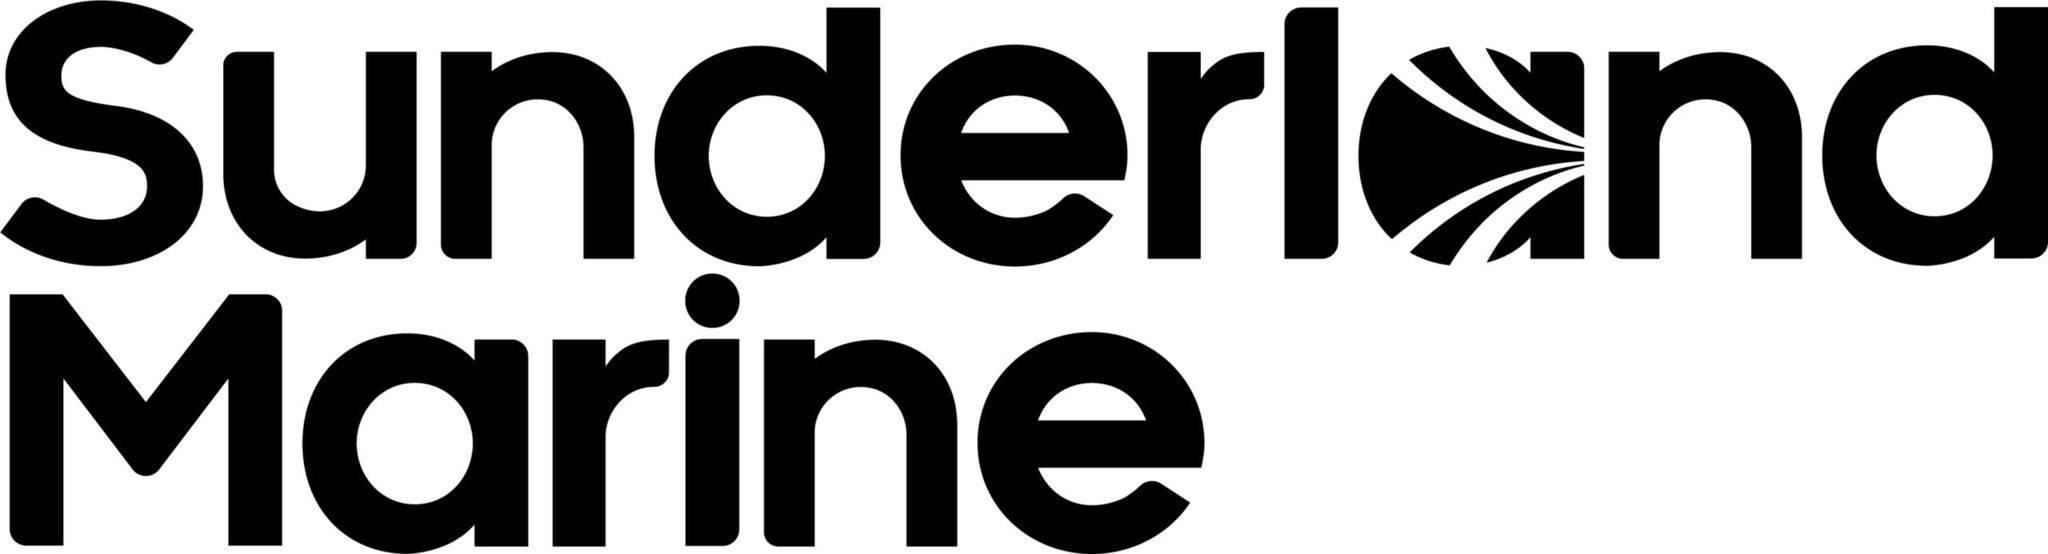 https://tunaaustralia.org.au/wp-content/uploads/2021/07/NORTH-Sunderland-Marine-Logo-Positive-scaled.jpeg